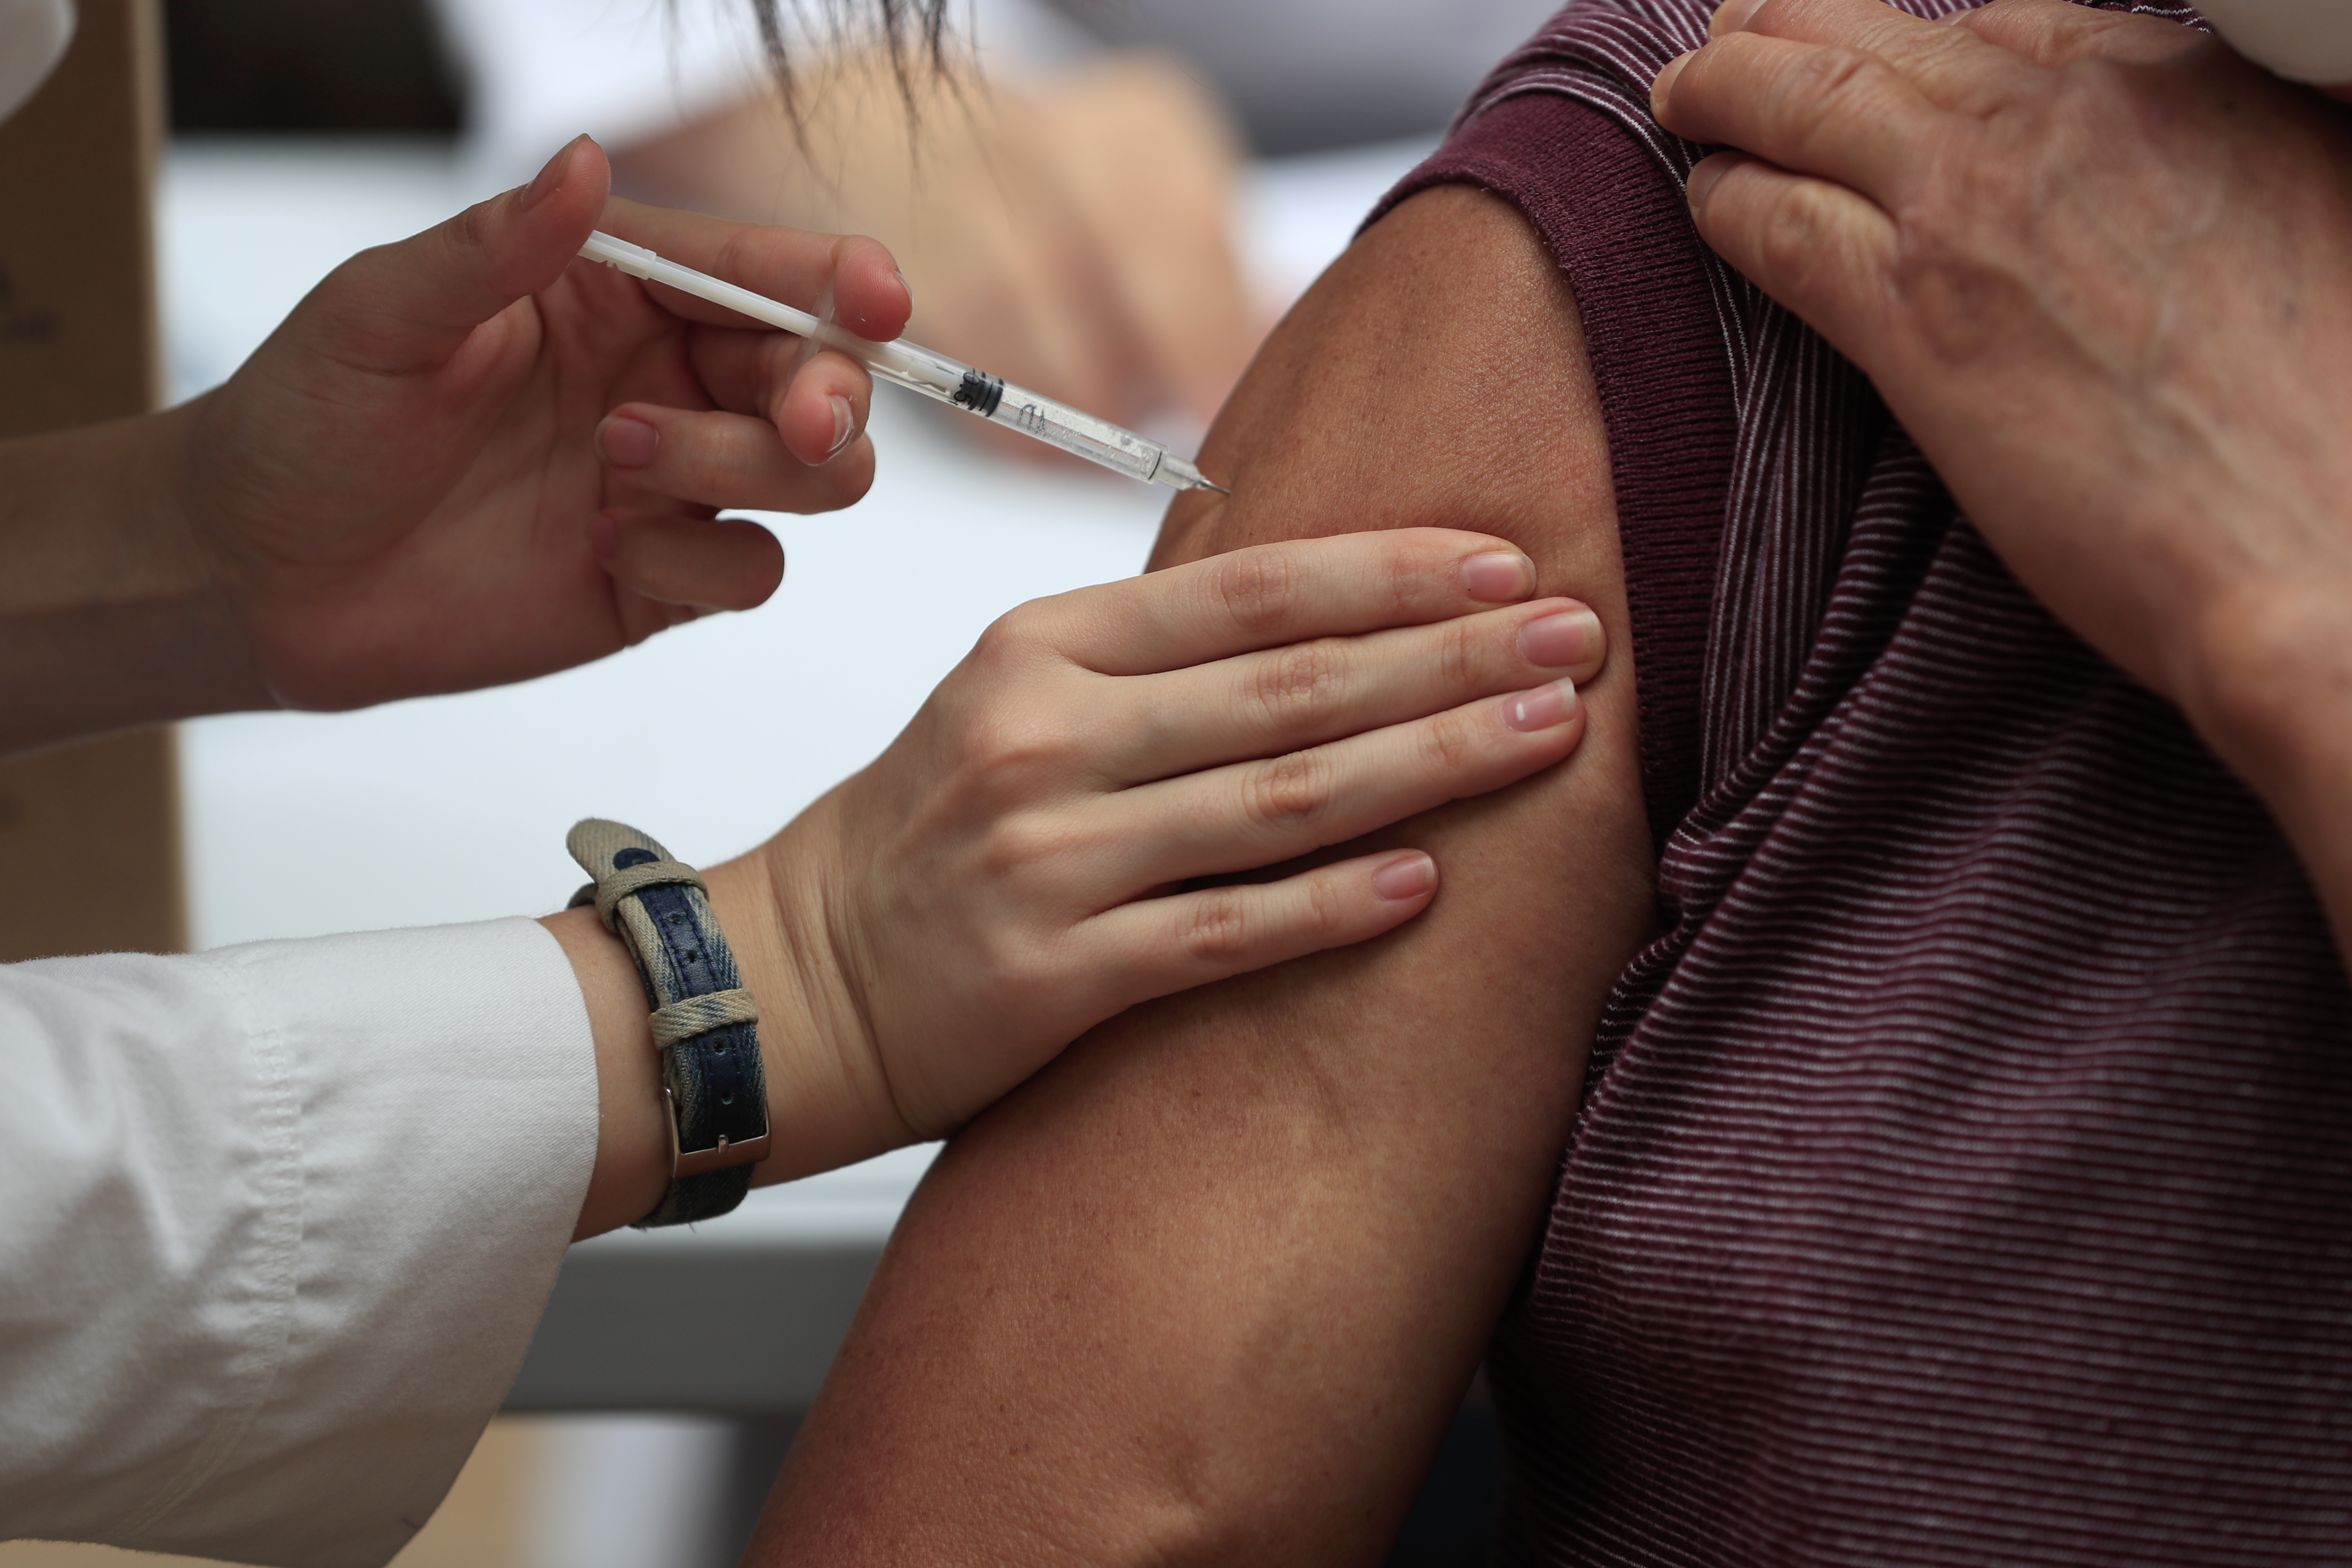 El proceso de vacunación en Guatemala avanza con lentitud, según varios sectores. (Foto Prensa Libre: Élmer Vargas)